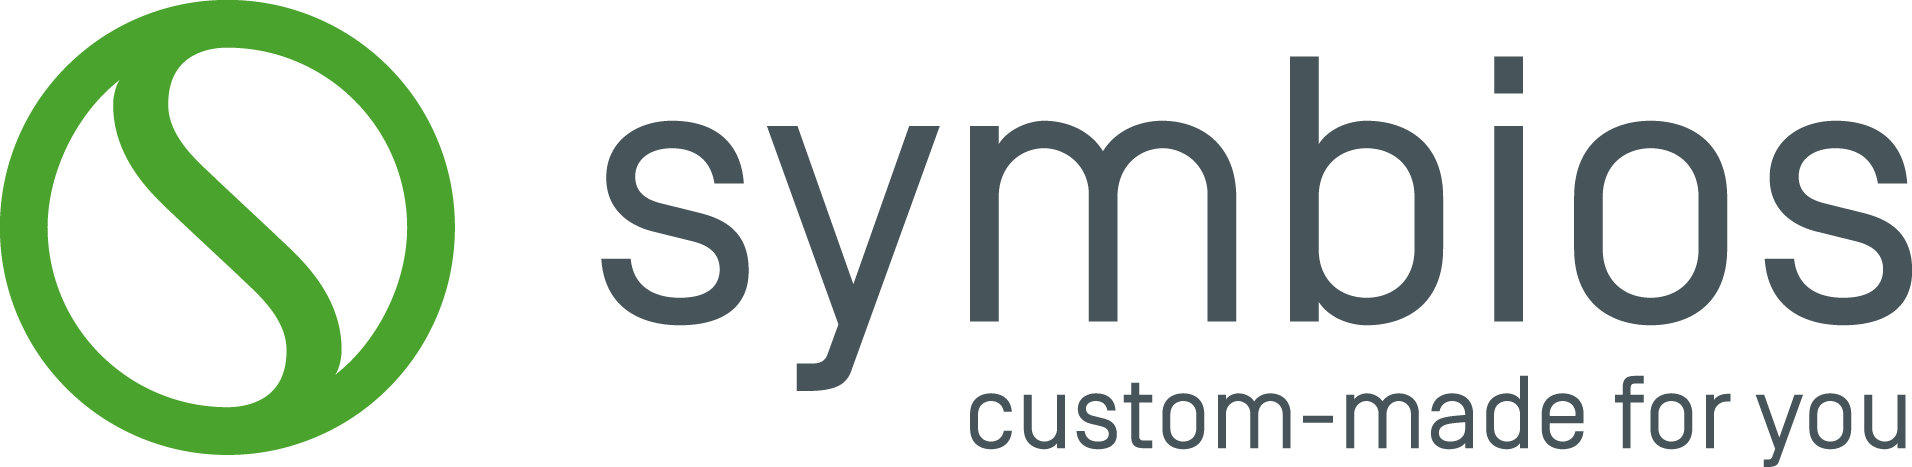 Symbios_LogoClaim.png